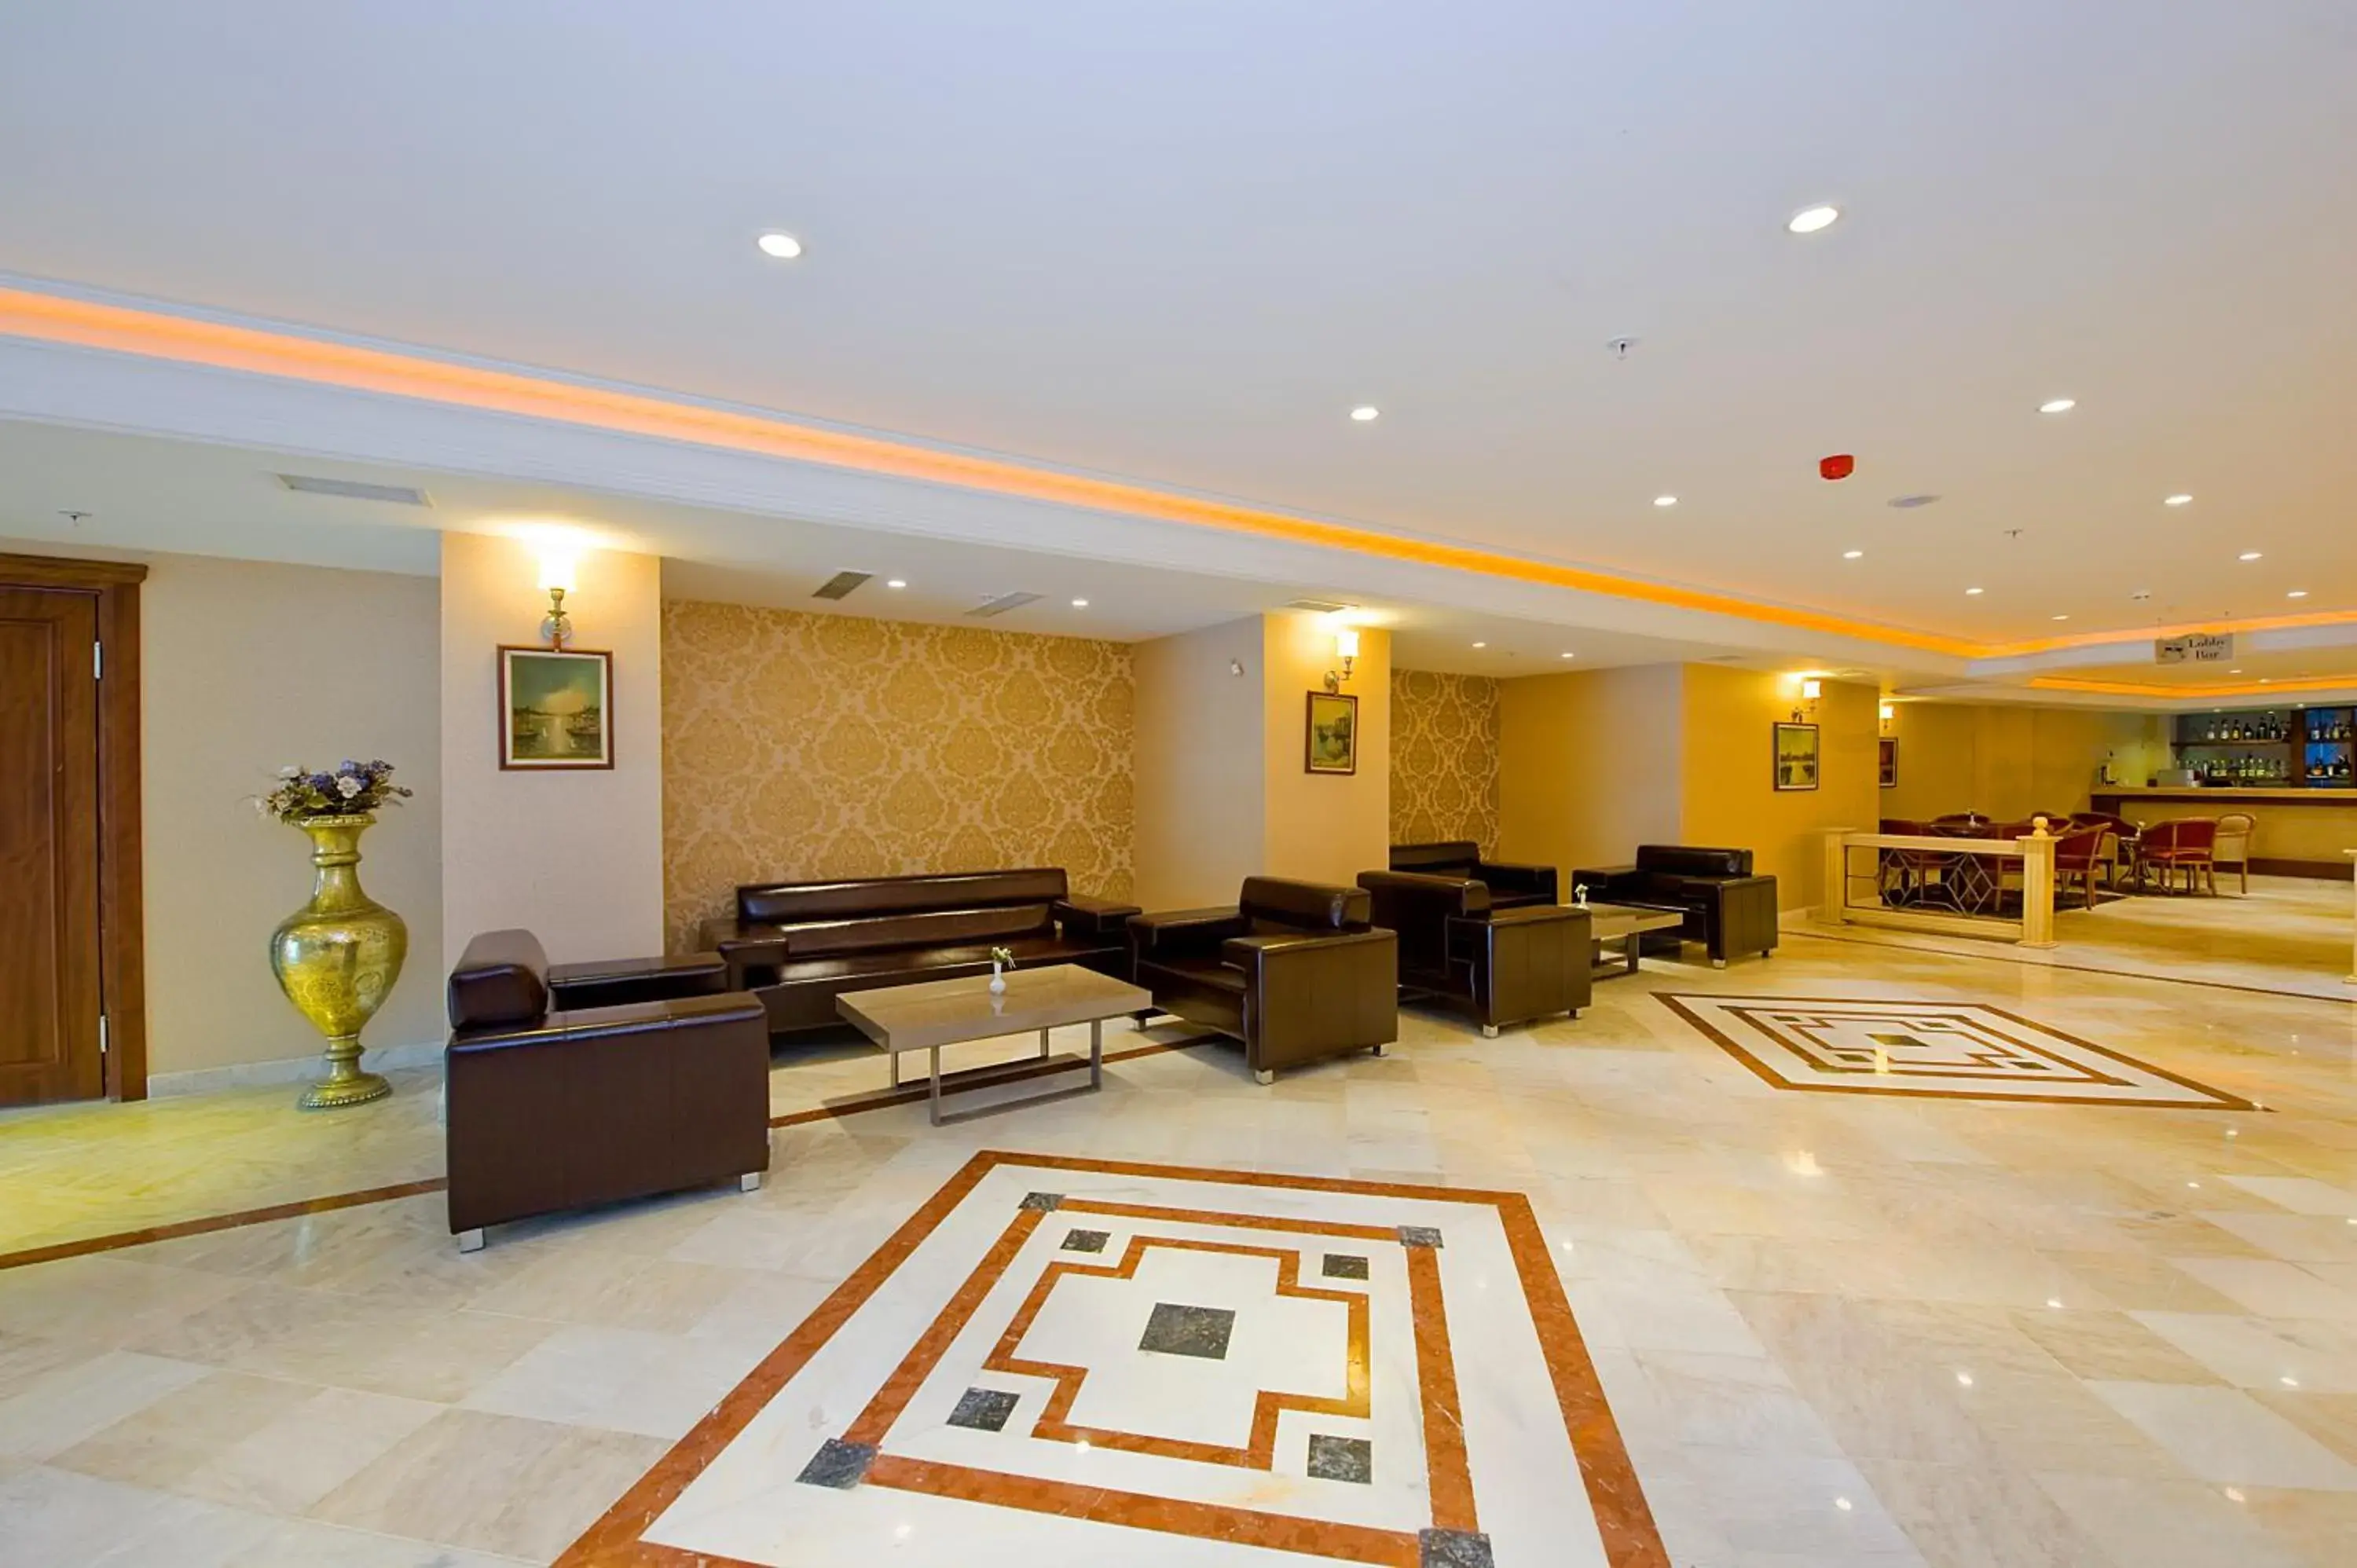 Lounge or bar, Lobby/Reception in Askoc Hotel & SPA